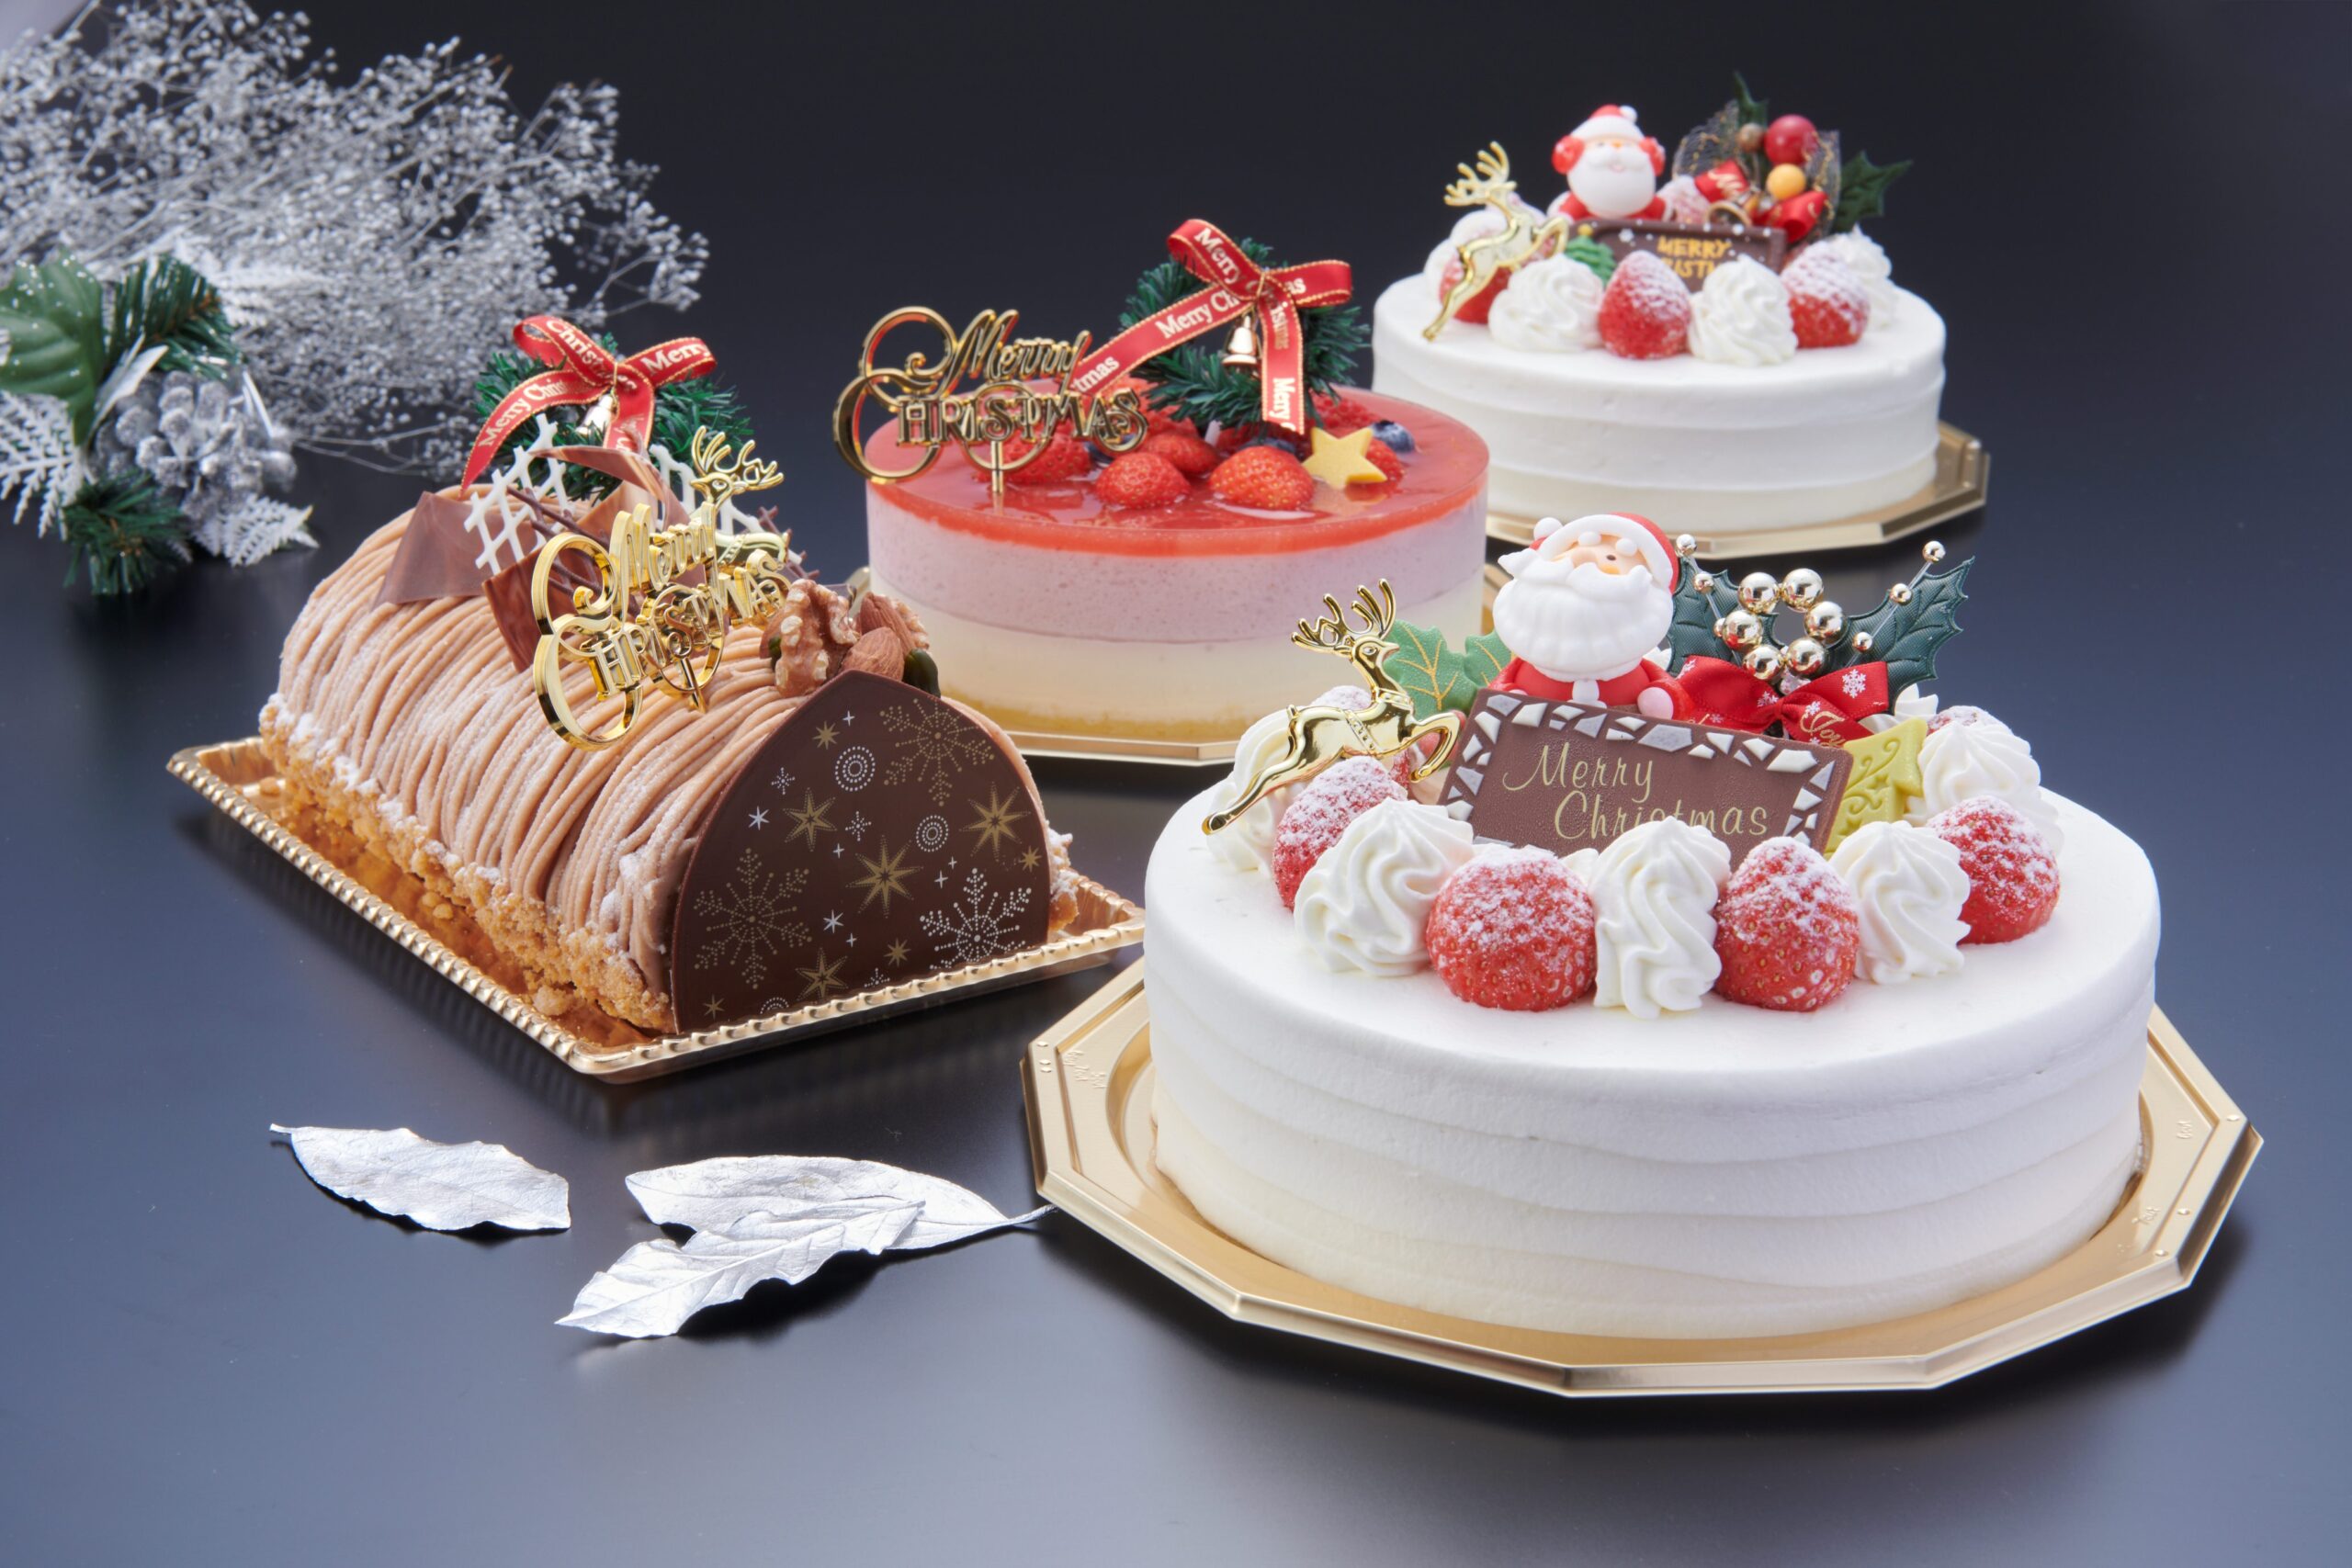 ホテルヴィスキオ尼崎は12月17日まで、クリスマスケーキの予約を数量限定で受付中だ。オンラインにて予約を受け付ける。